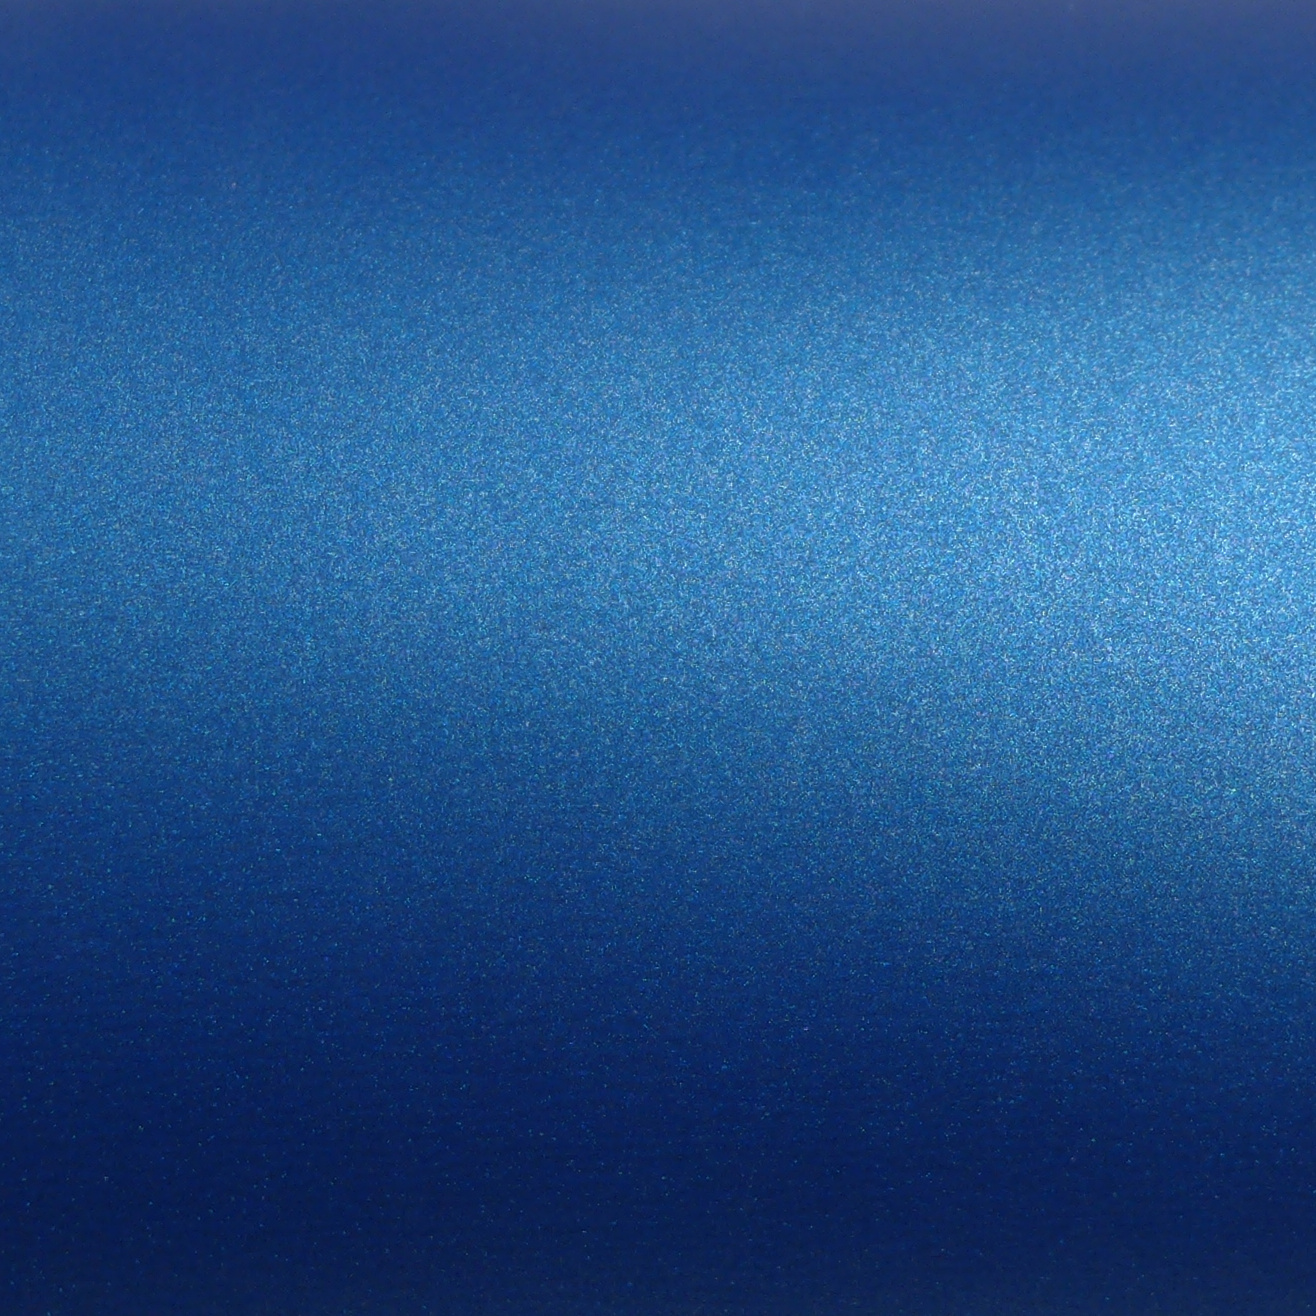 3M 2080 M227 blue metallic wrapping bilindpakning blå metallic folie carl jensen